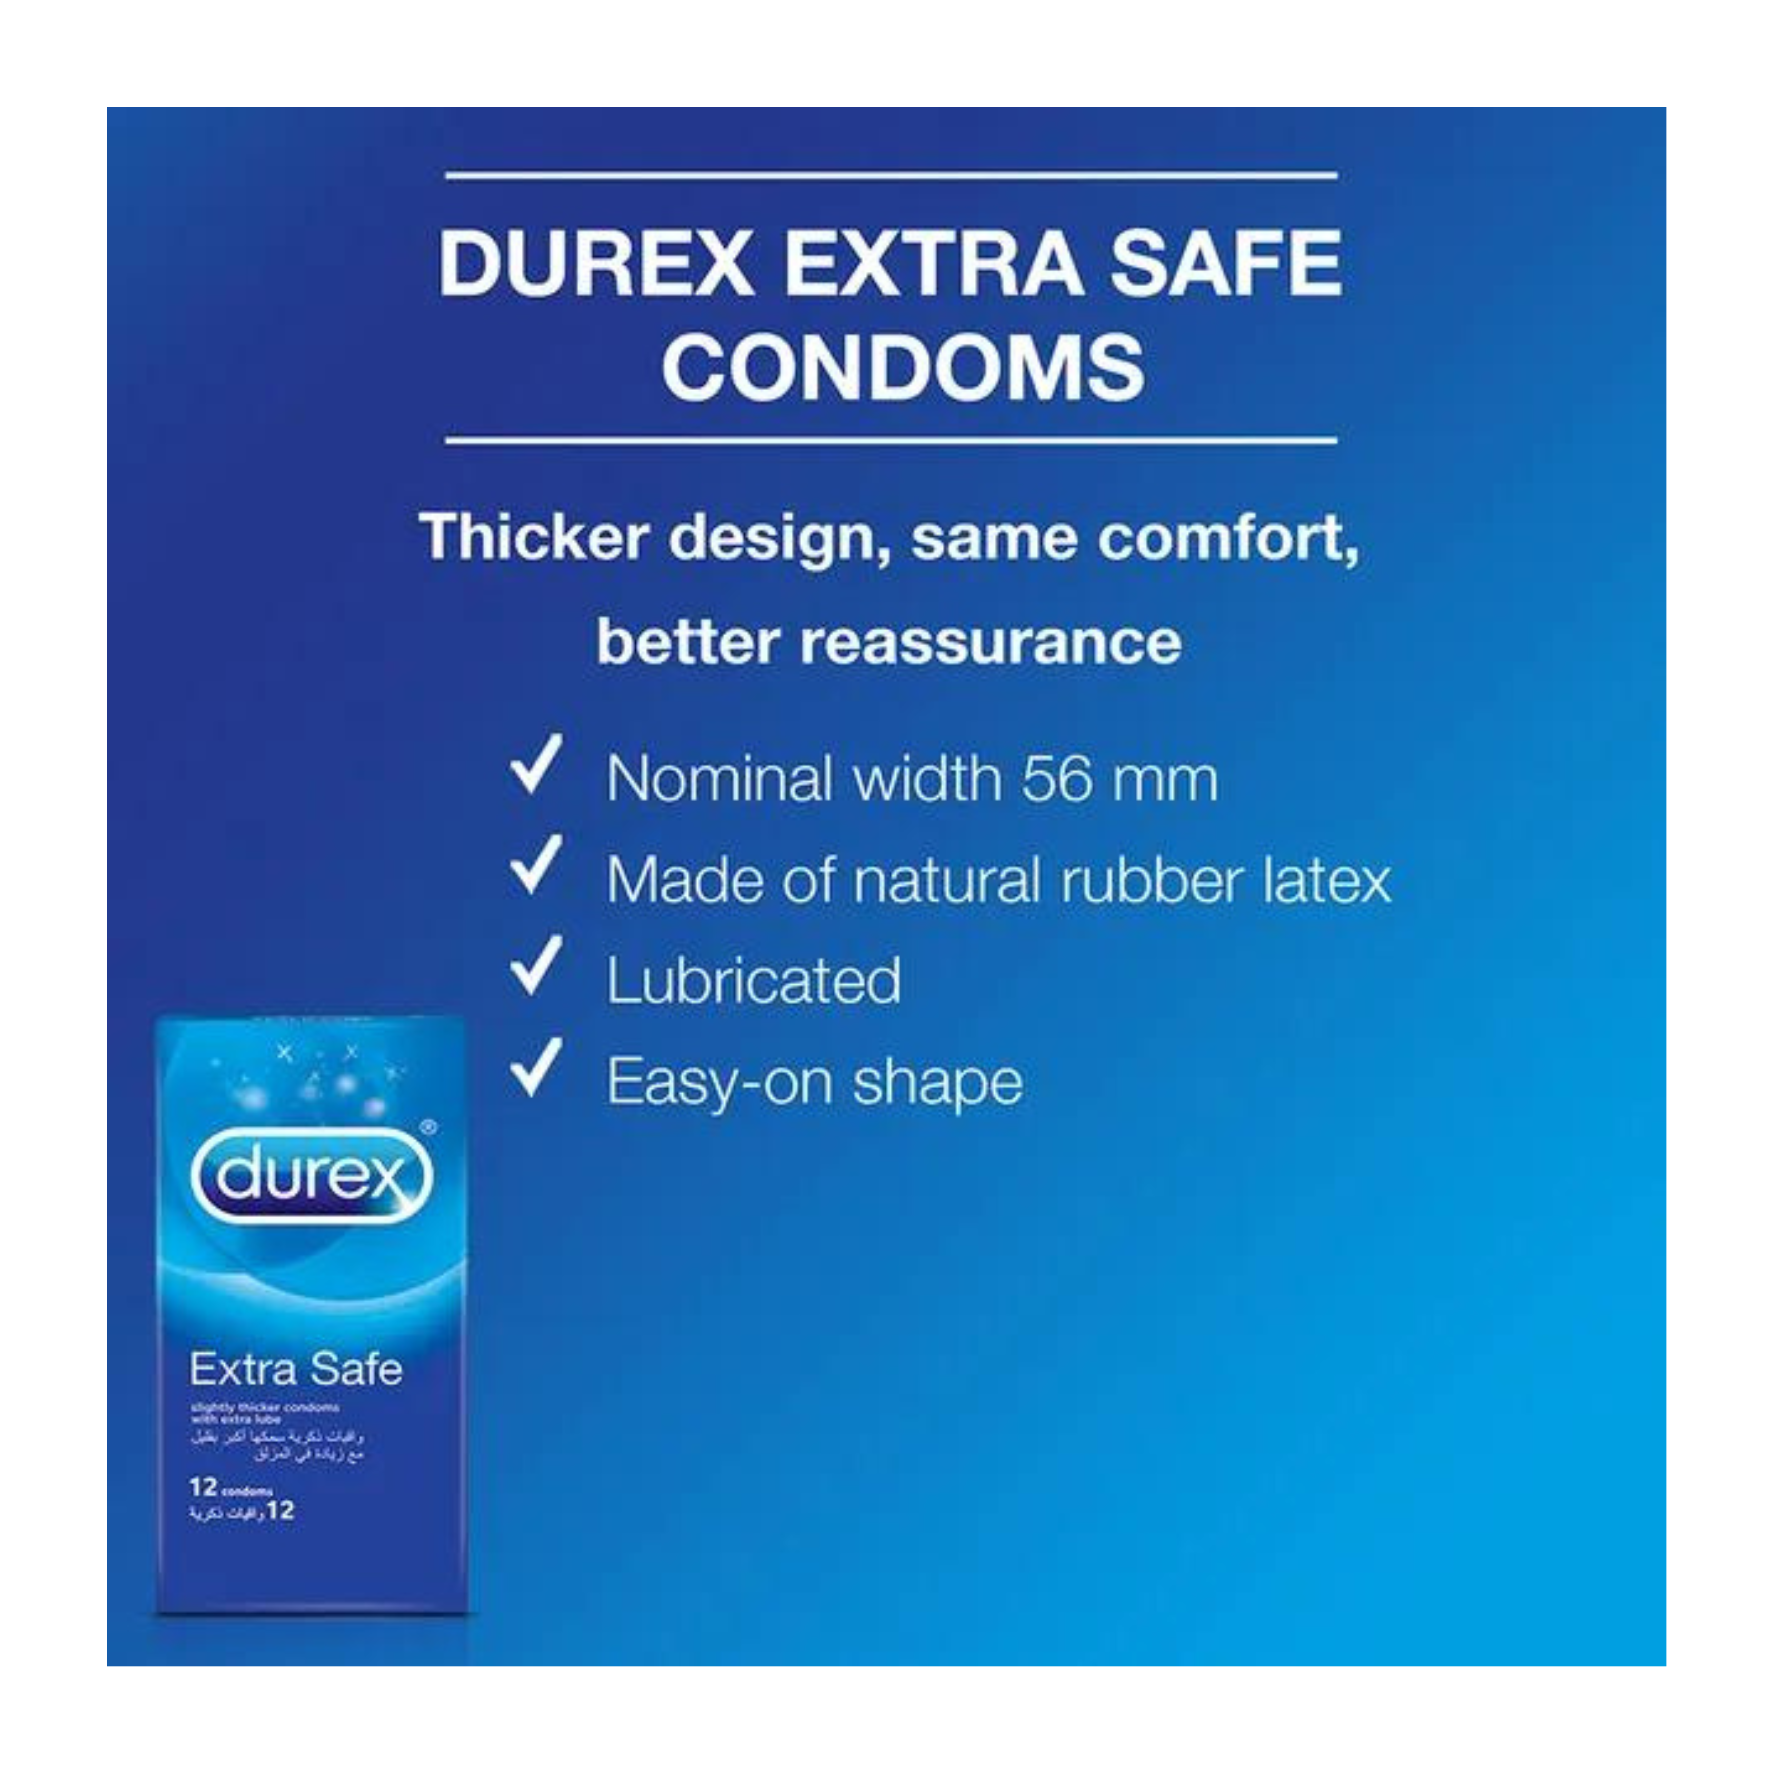 PREZERVATYVAI SUTEIKIANTYS MAKSIMALIĄ APSAUGĄ "DUREX EXTRA SAFE" - 12 VNT.  
"Durex Extra Safe" tai  skaidrūs ir lubrikuoti  prezervatyvai skirti  saugiai ir jausmingai patirčiai.  
  
Šie prezervatyvai sukurti iš šiek tiek storesnio latekso ir papildomai lubrikuoti, tad  seksas bus malonus bei saugus.  
Prieš užsidėdami prezervatyvą įsitikinkite, kad jūsų varpa neliečia partnerio lytinių organų srities – sperma iš varpos gali išeiti dar prieš pilną ejakuliaciją.   
*Atminkite, kad nė viena kontraceptinė priemonė nėra 100 % veiksminga nuo nėštumo, ŽIV ar lytiškai plintančių infekcijų.